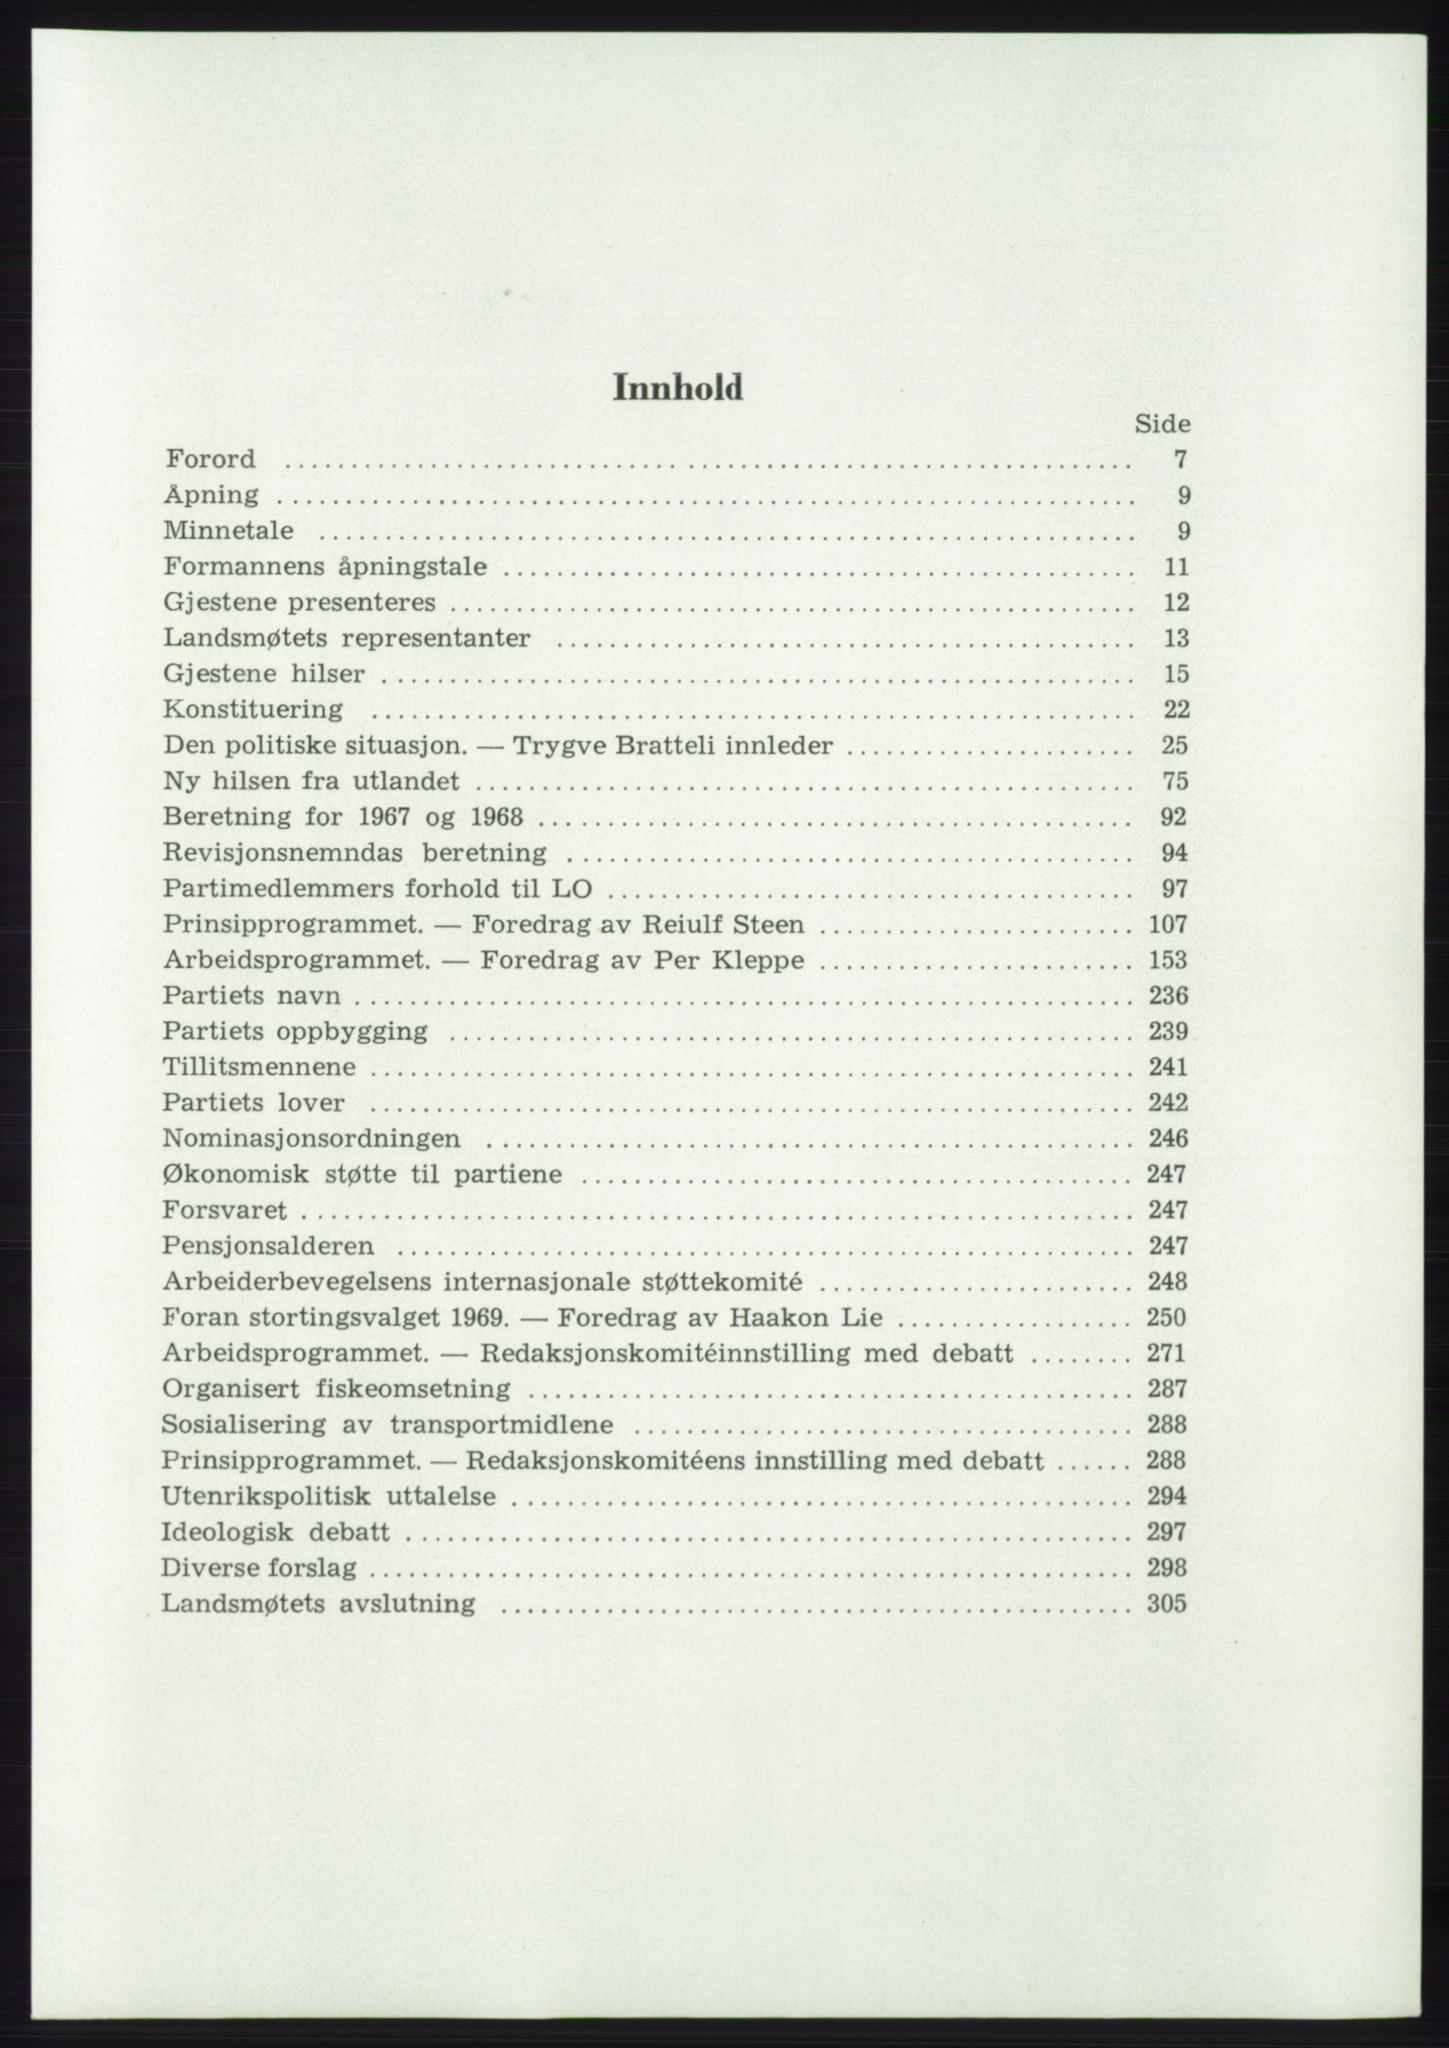 Det norske Arbeiderparti - publikasjoner, AAB/-/-/-: Protokoll over forhandlingene på det 42. ordinære landsmøte 11.-14. mai 1969 i Oslo, 1969